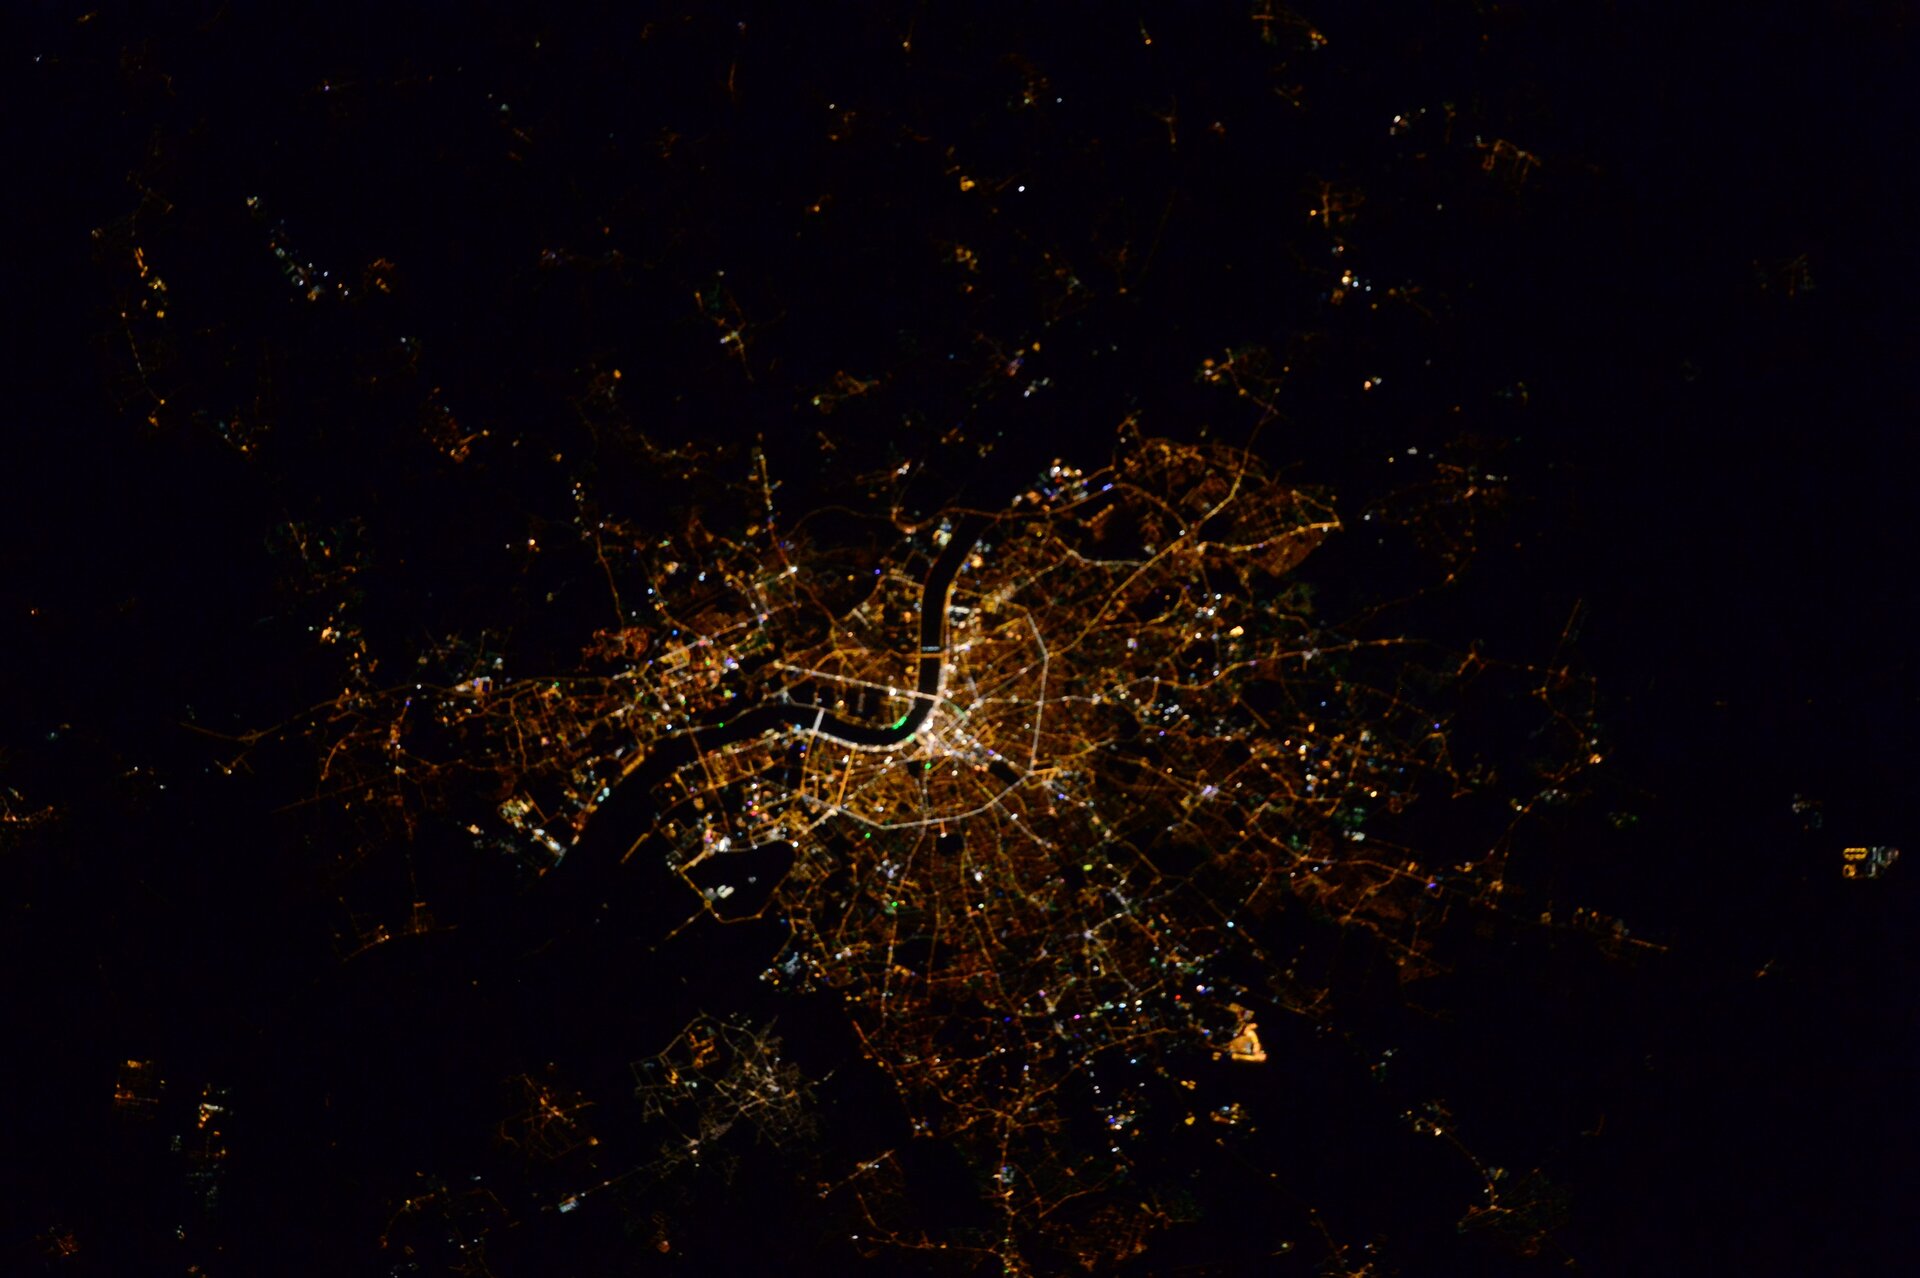 Bordeaux, France, vue depuis la Station spatiale internationale